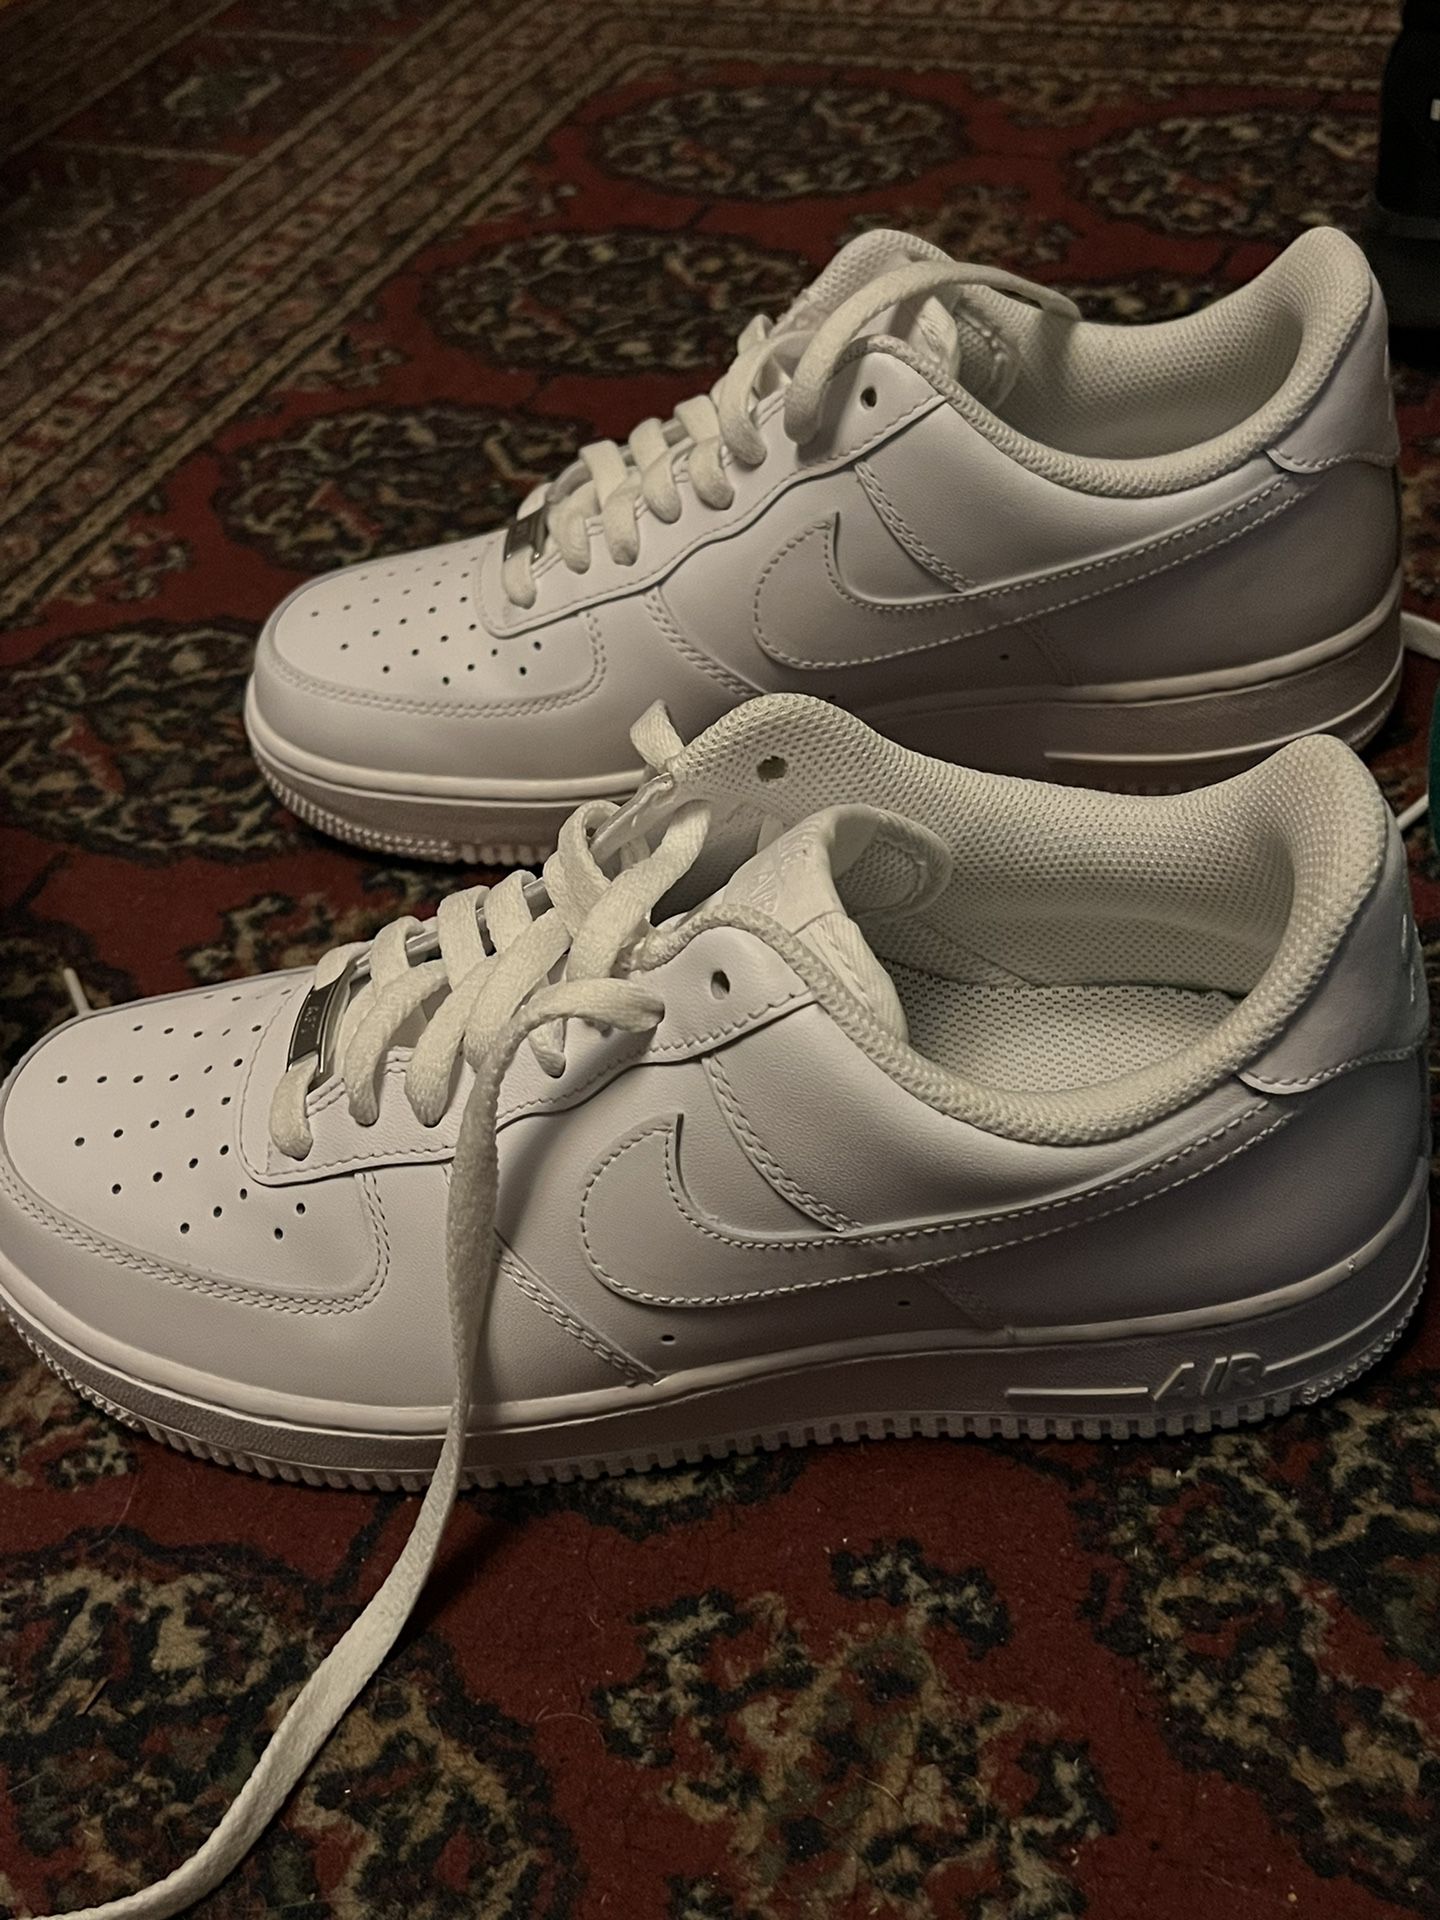 Air Force 1 Shoes 9.5 Men’s Size